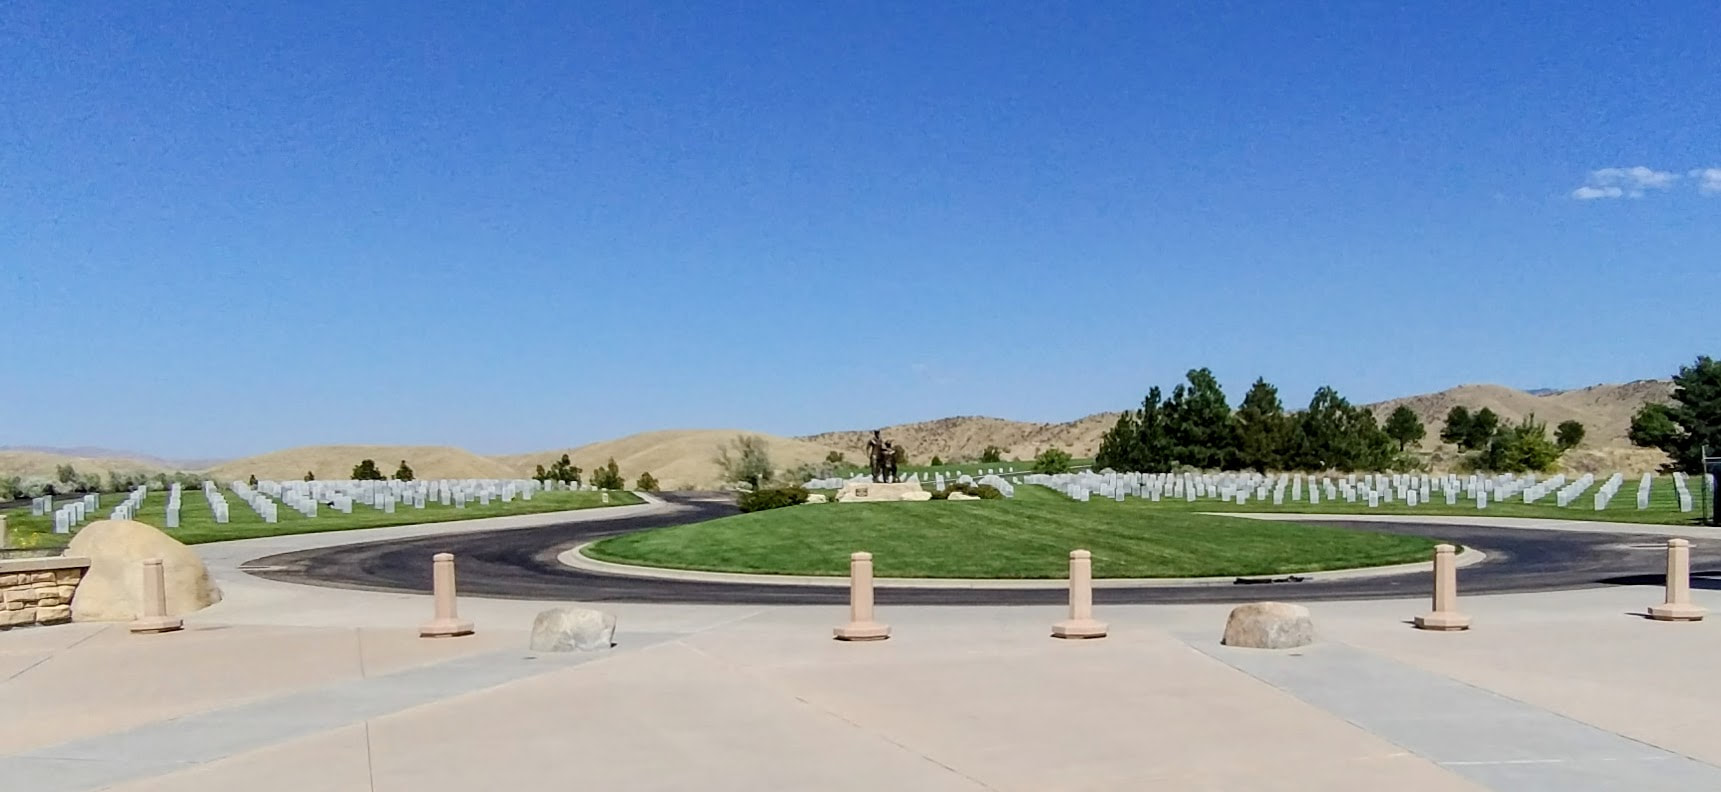 Idaho State Veterans Cemetery